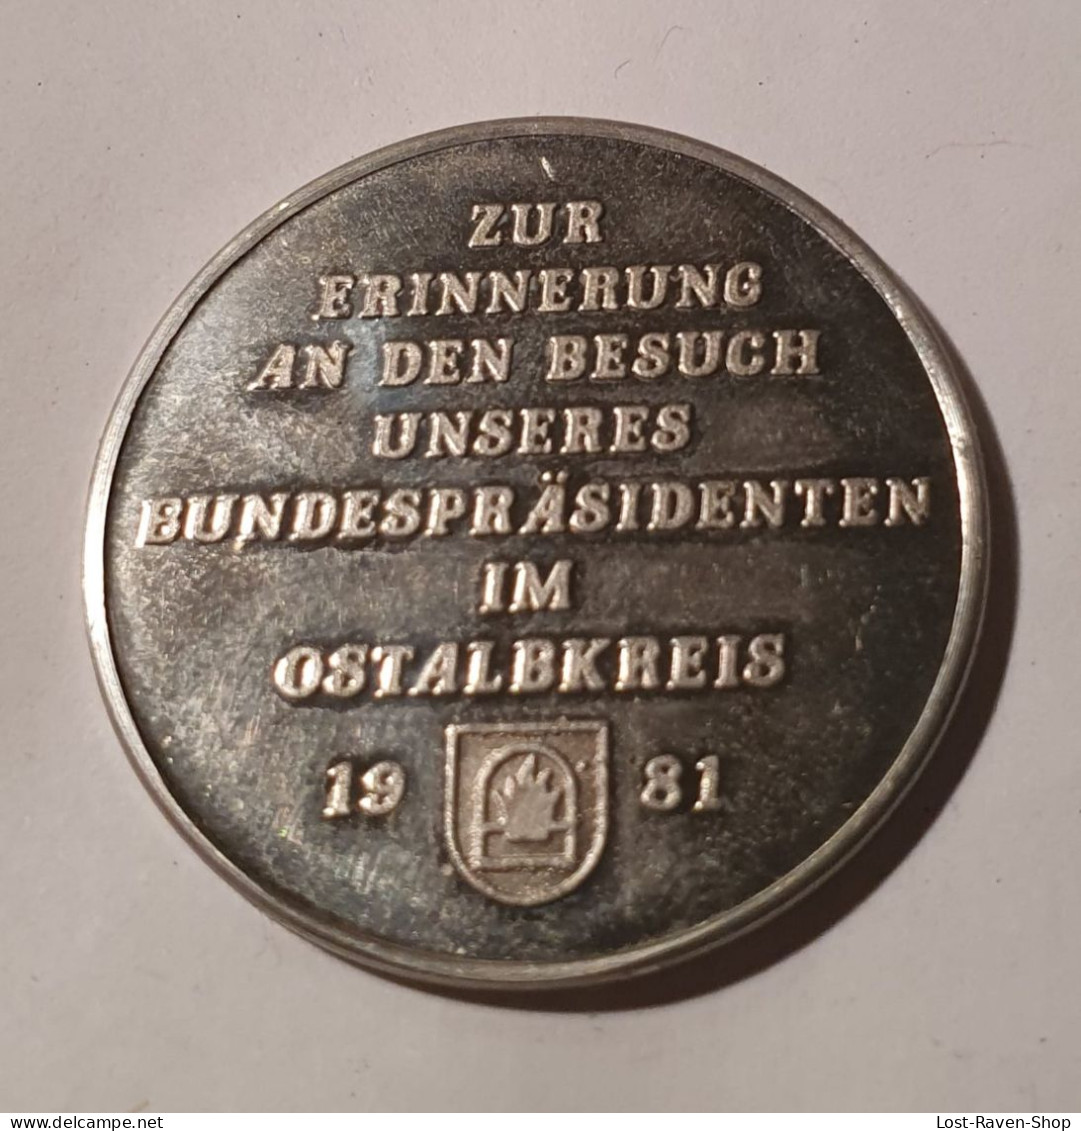 Zur Erinnerung An Den Besuch Unseres Bundespräsidenten Im Ostalbkreis 1981 - Karl Carstens - Souvenir-Medaille (elongated Coins)